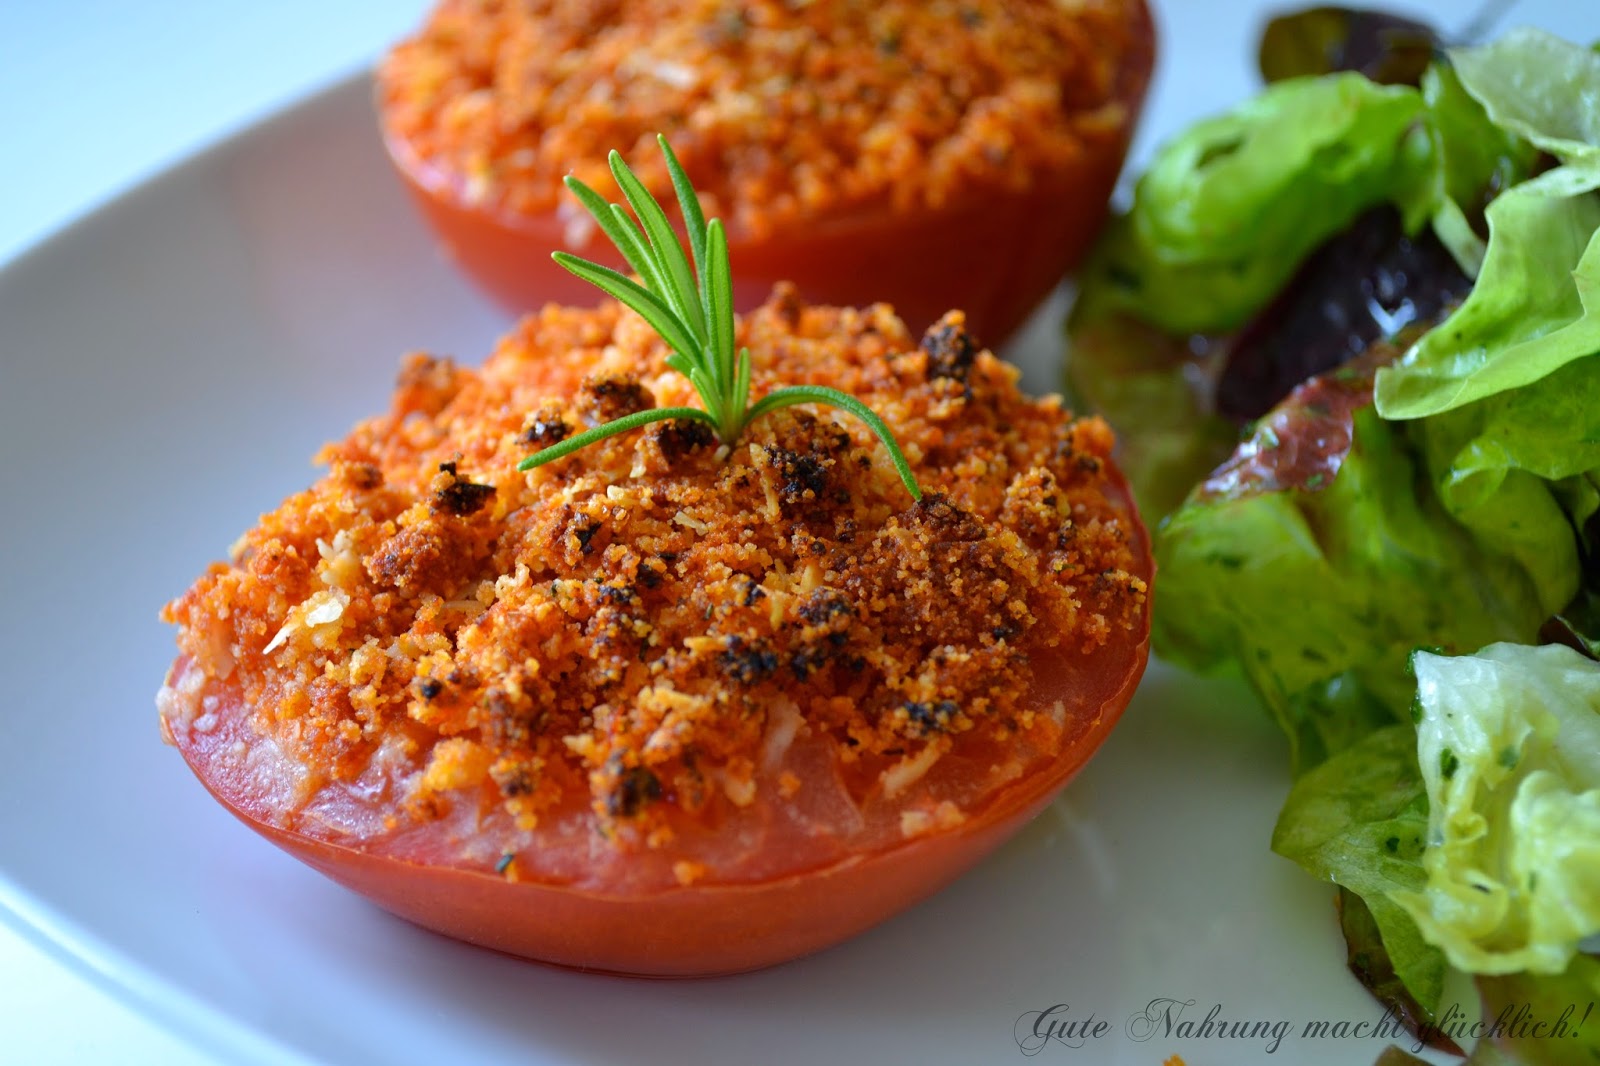 Gute Nahrung macht glücklich : Knusprige Tomaten aus dem Ofen